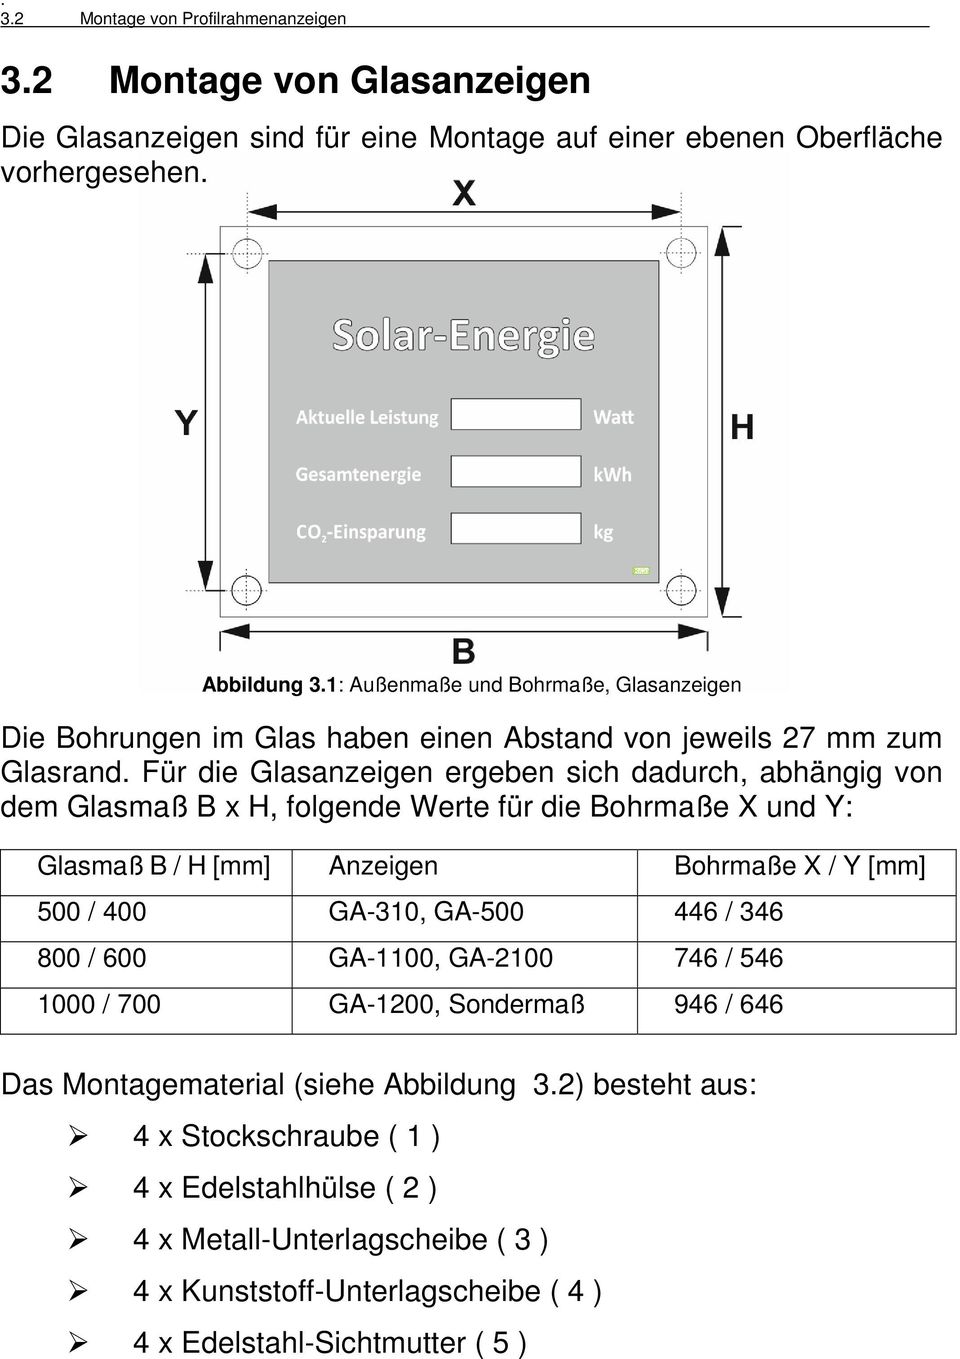 Für die Glasanzeigen ergeben sich dadurch, abhängig von dem Glasmaß B x H, folgende Werte für die Bohrmaße X und Y: Glasmaß B / H [mm] Anzeigen Bohrmaße X / Y [mm] 500 / 400 GA-310, GA-500